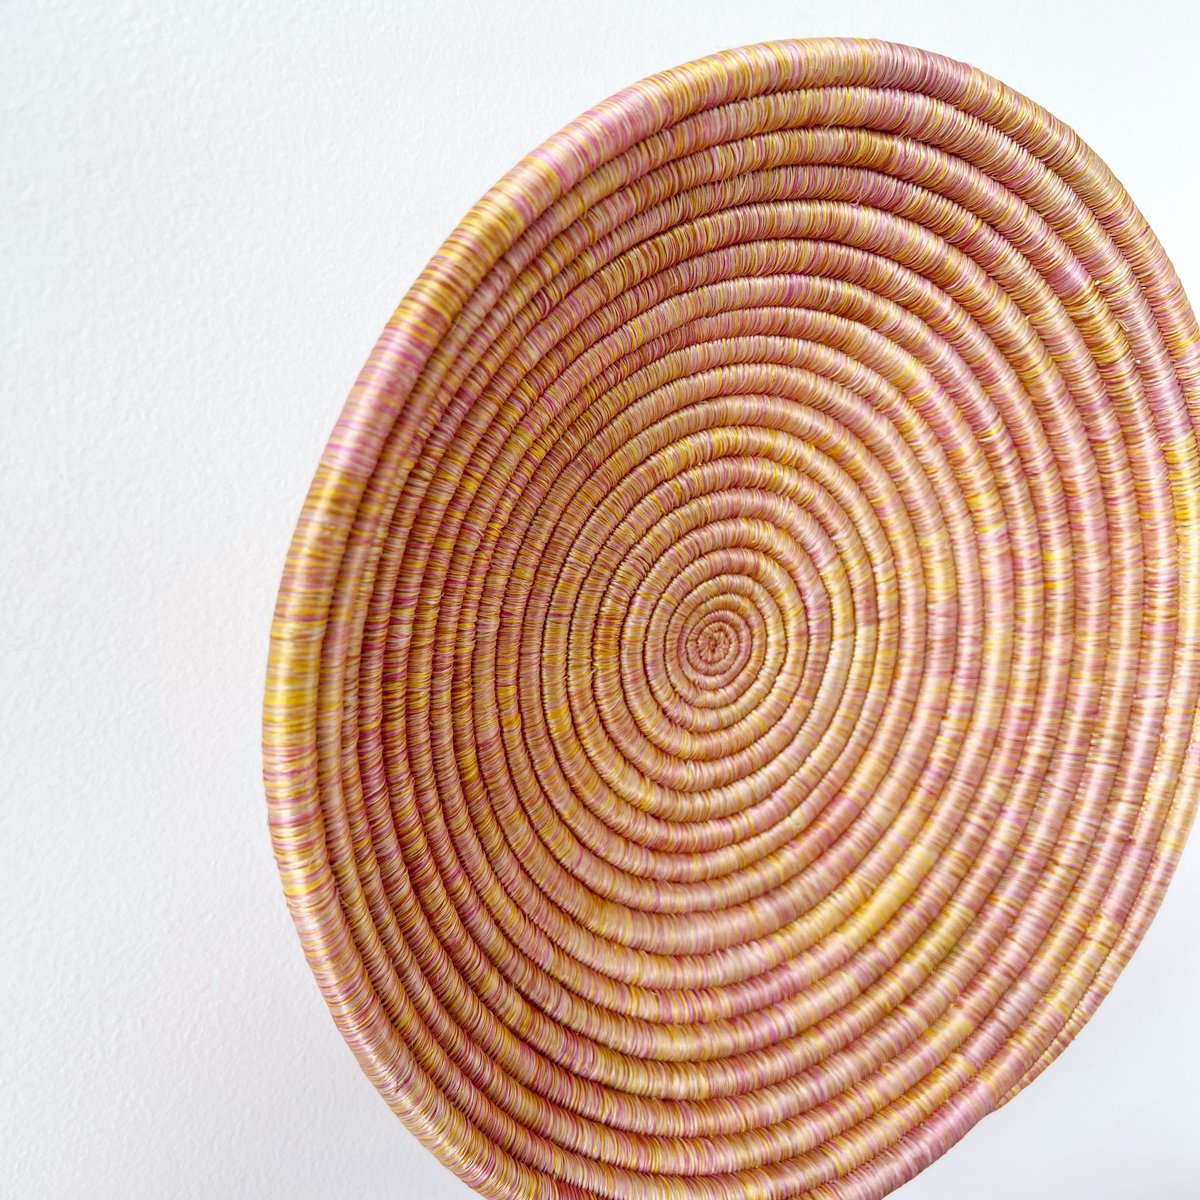 mondocherry - "Cyabayaga" African woven bowl | large - side